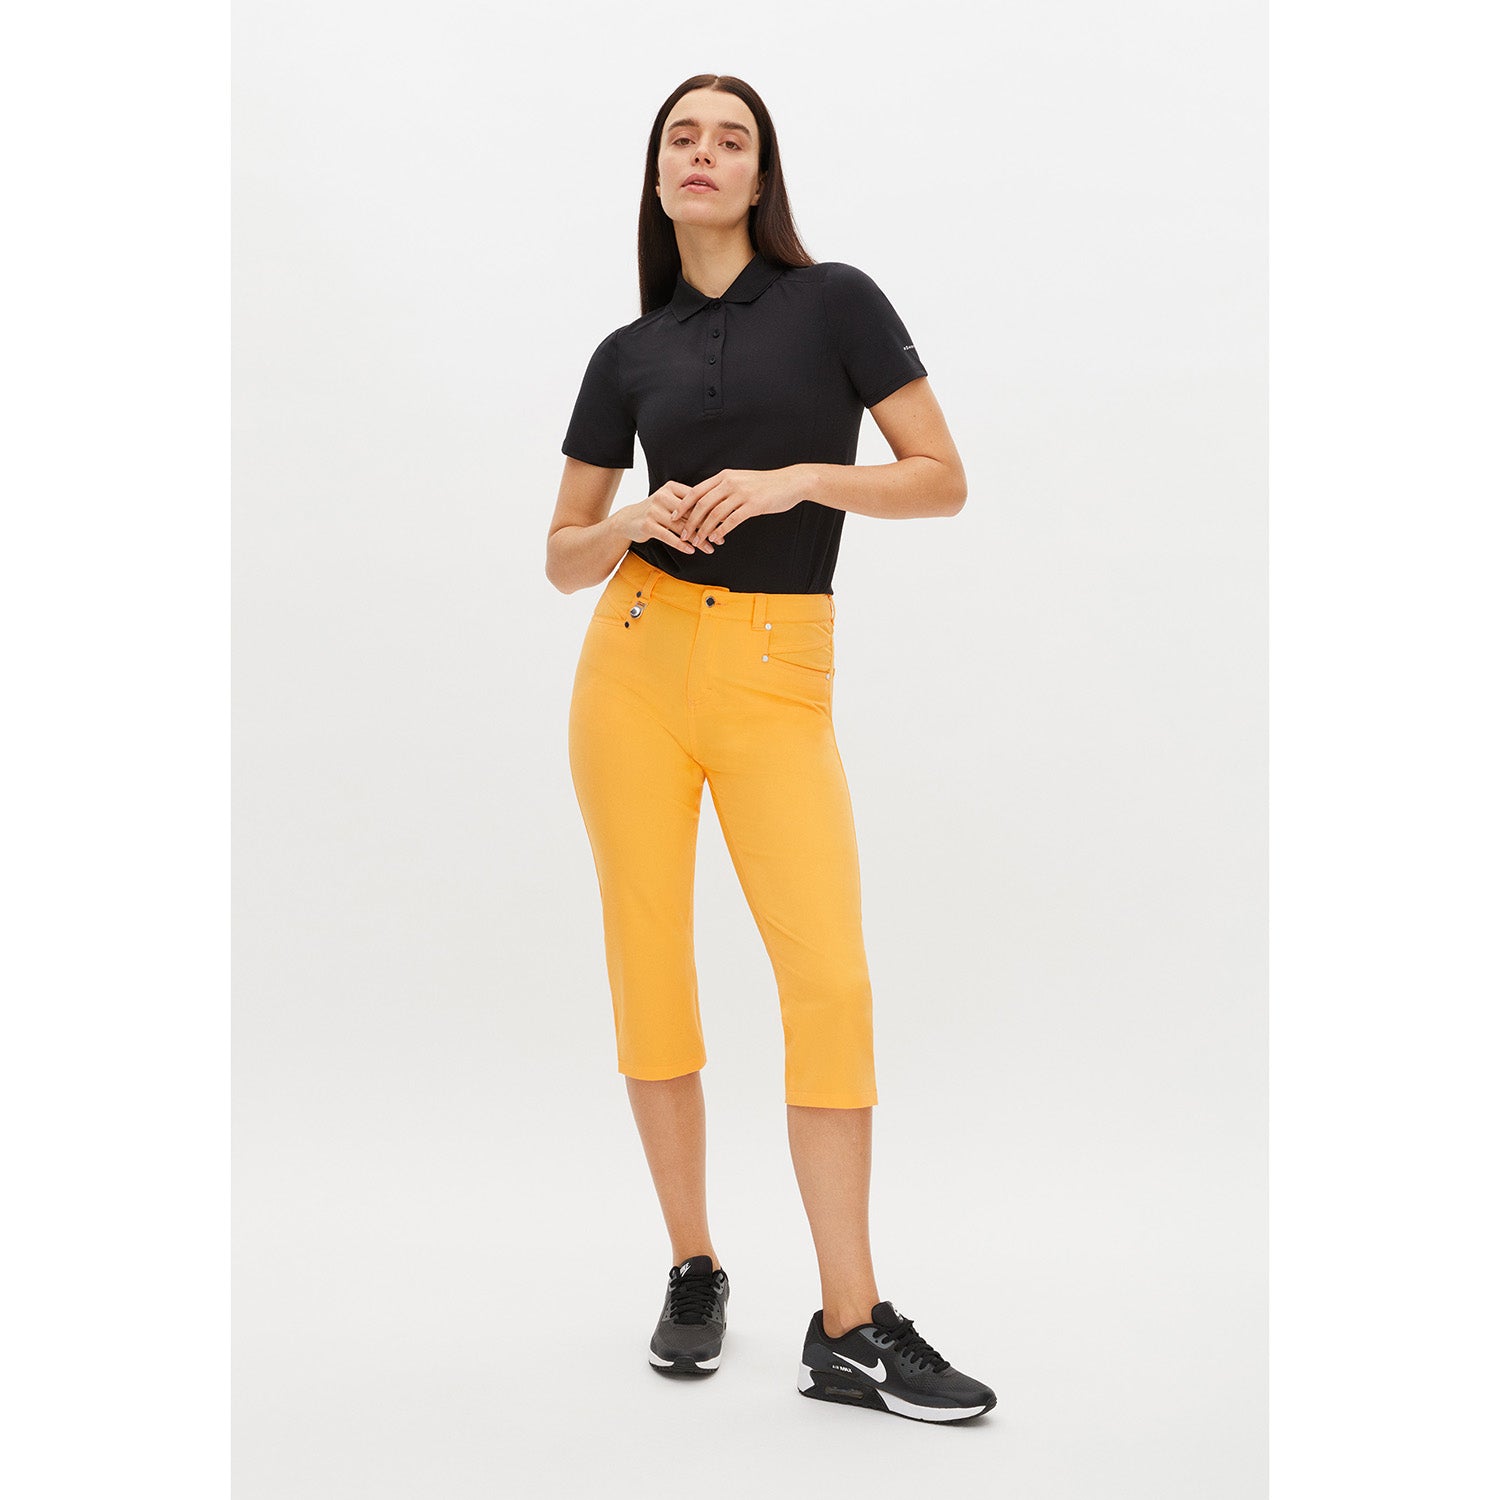 Rohnisch Ladies Chic Slim-Fit Capris in Blazing Orange – GolfGarb